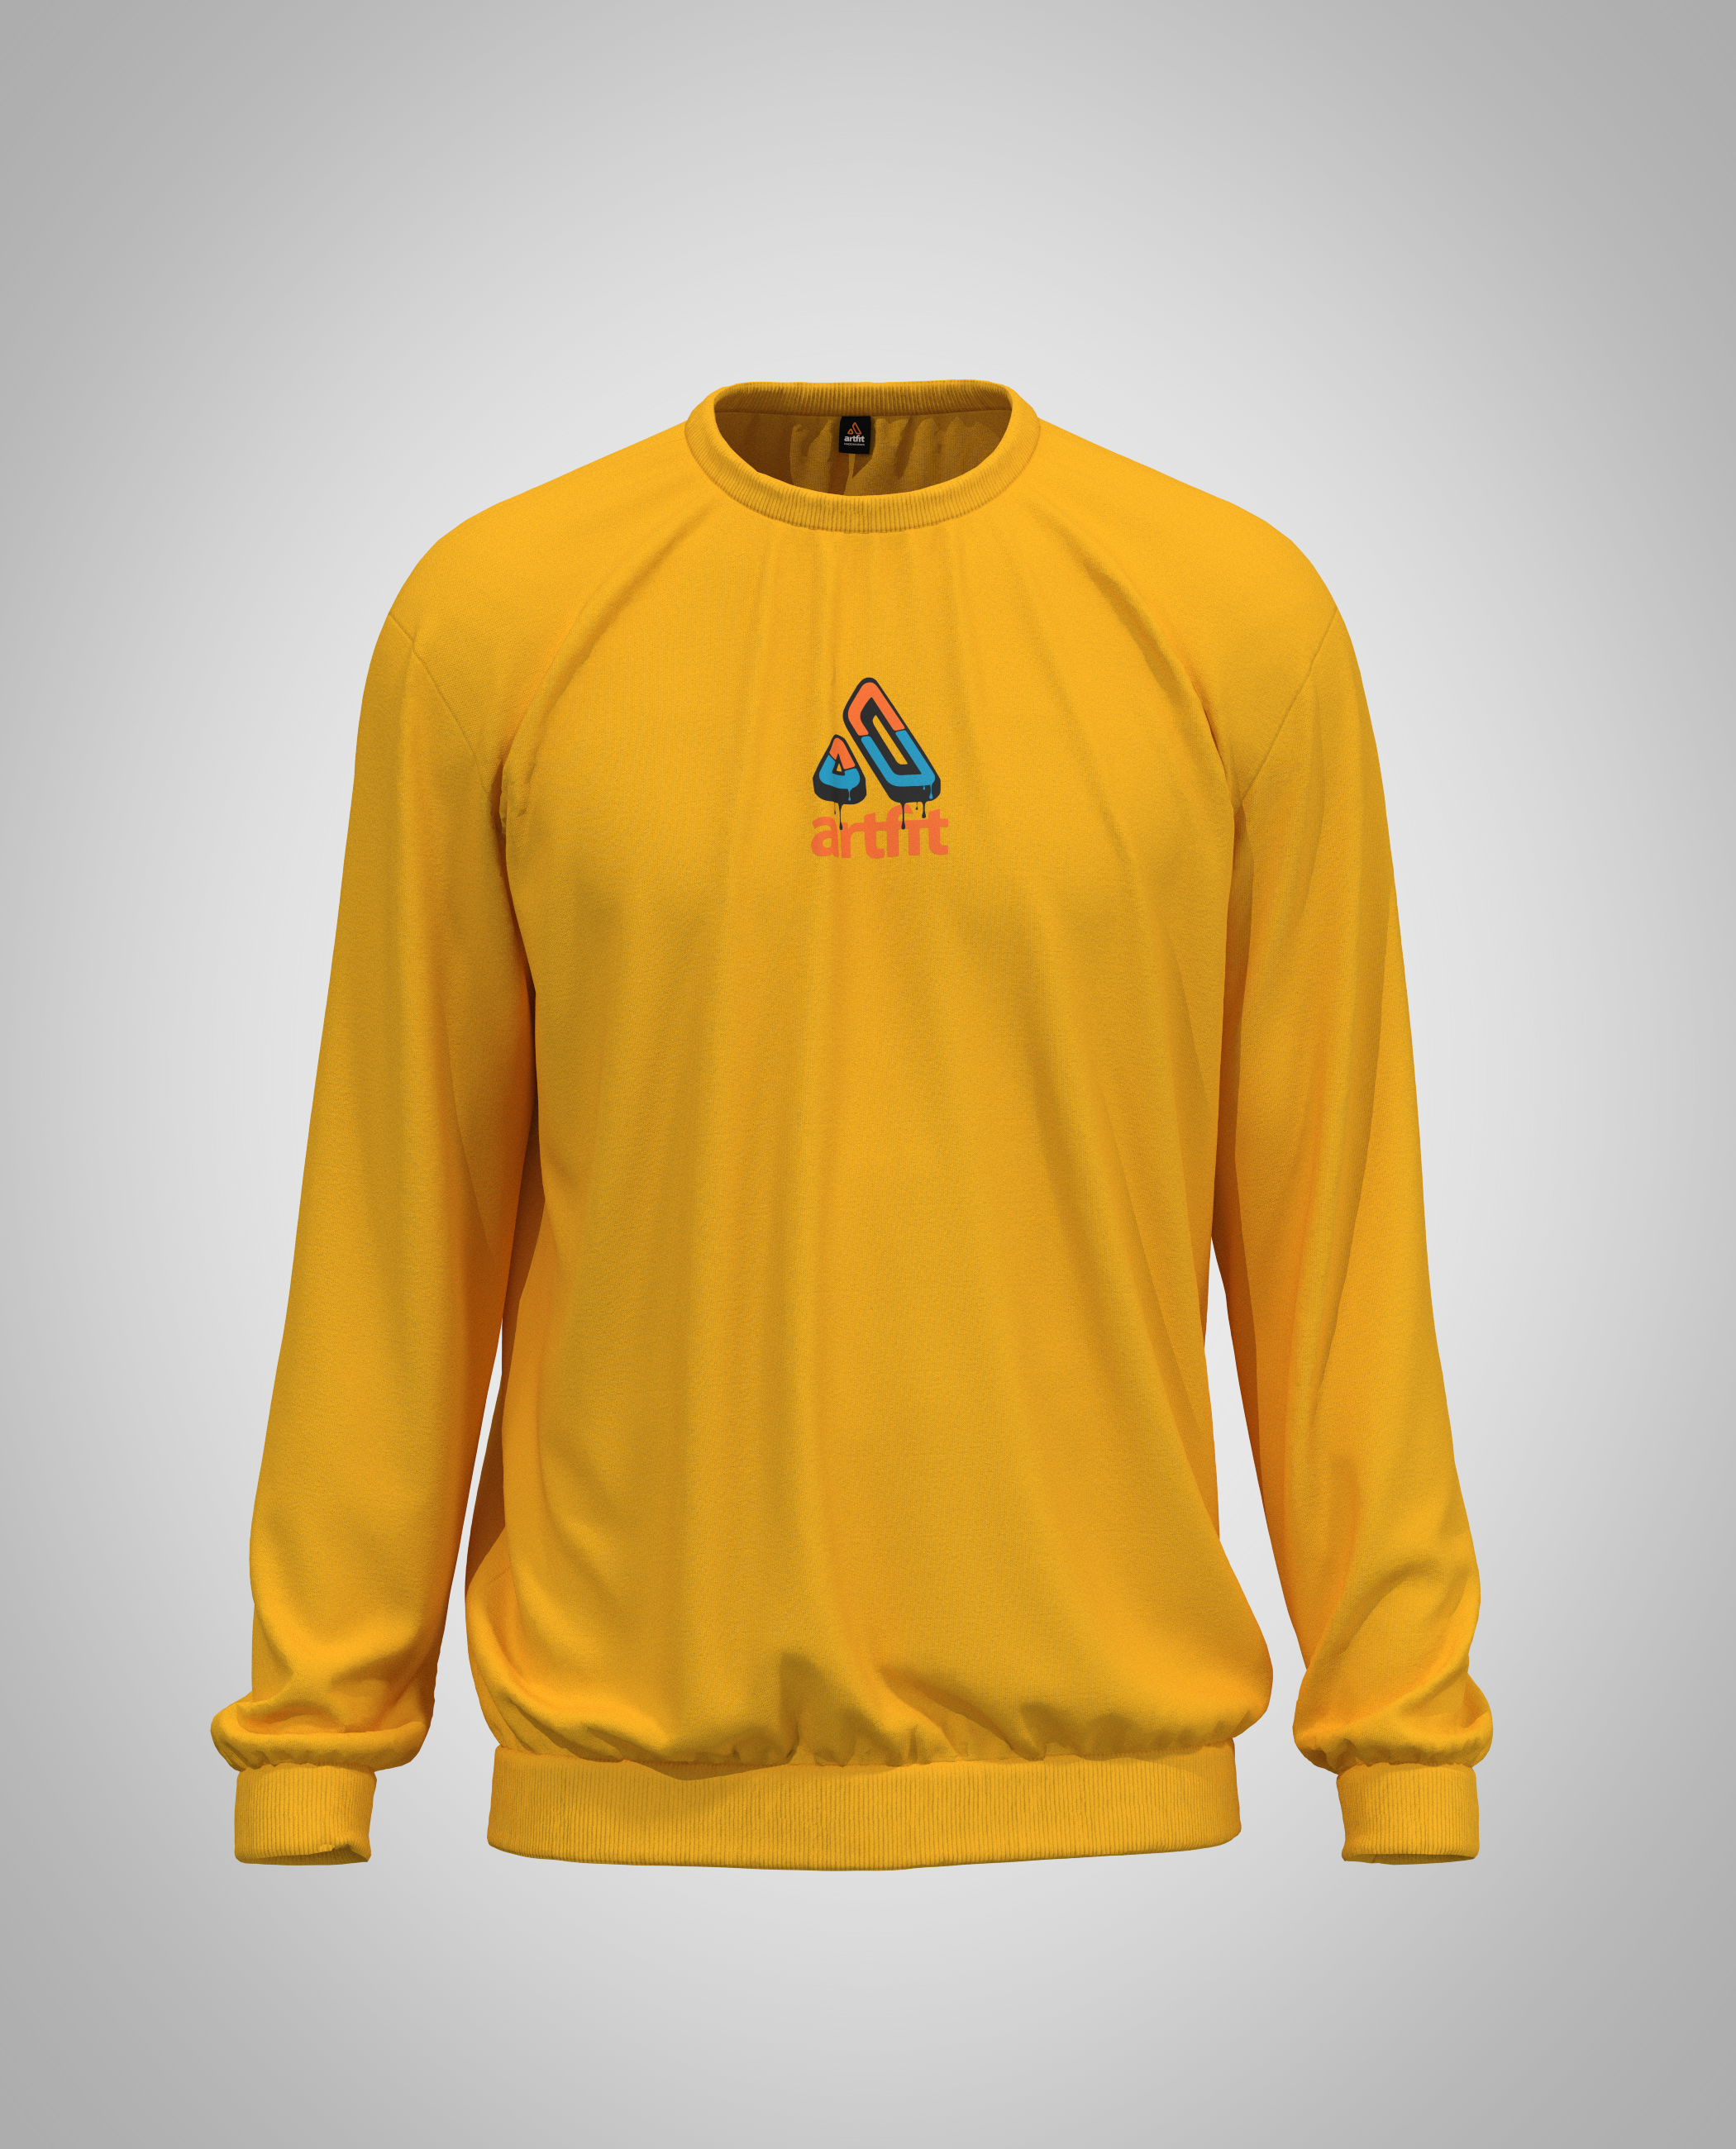 Mustard Yellow Sweatshirt(Heavy Fabric)